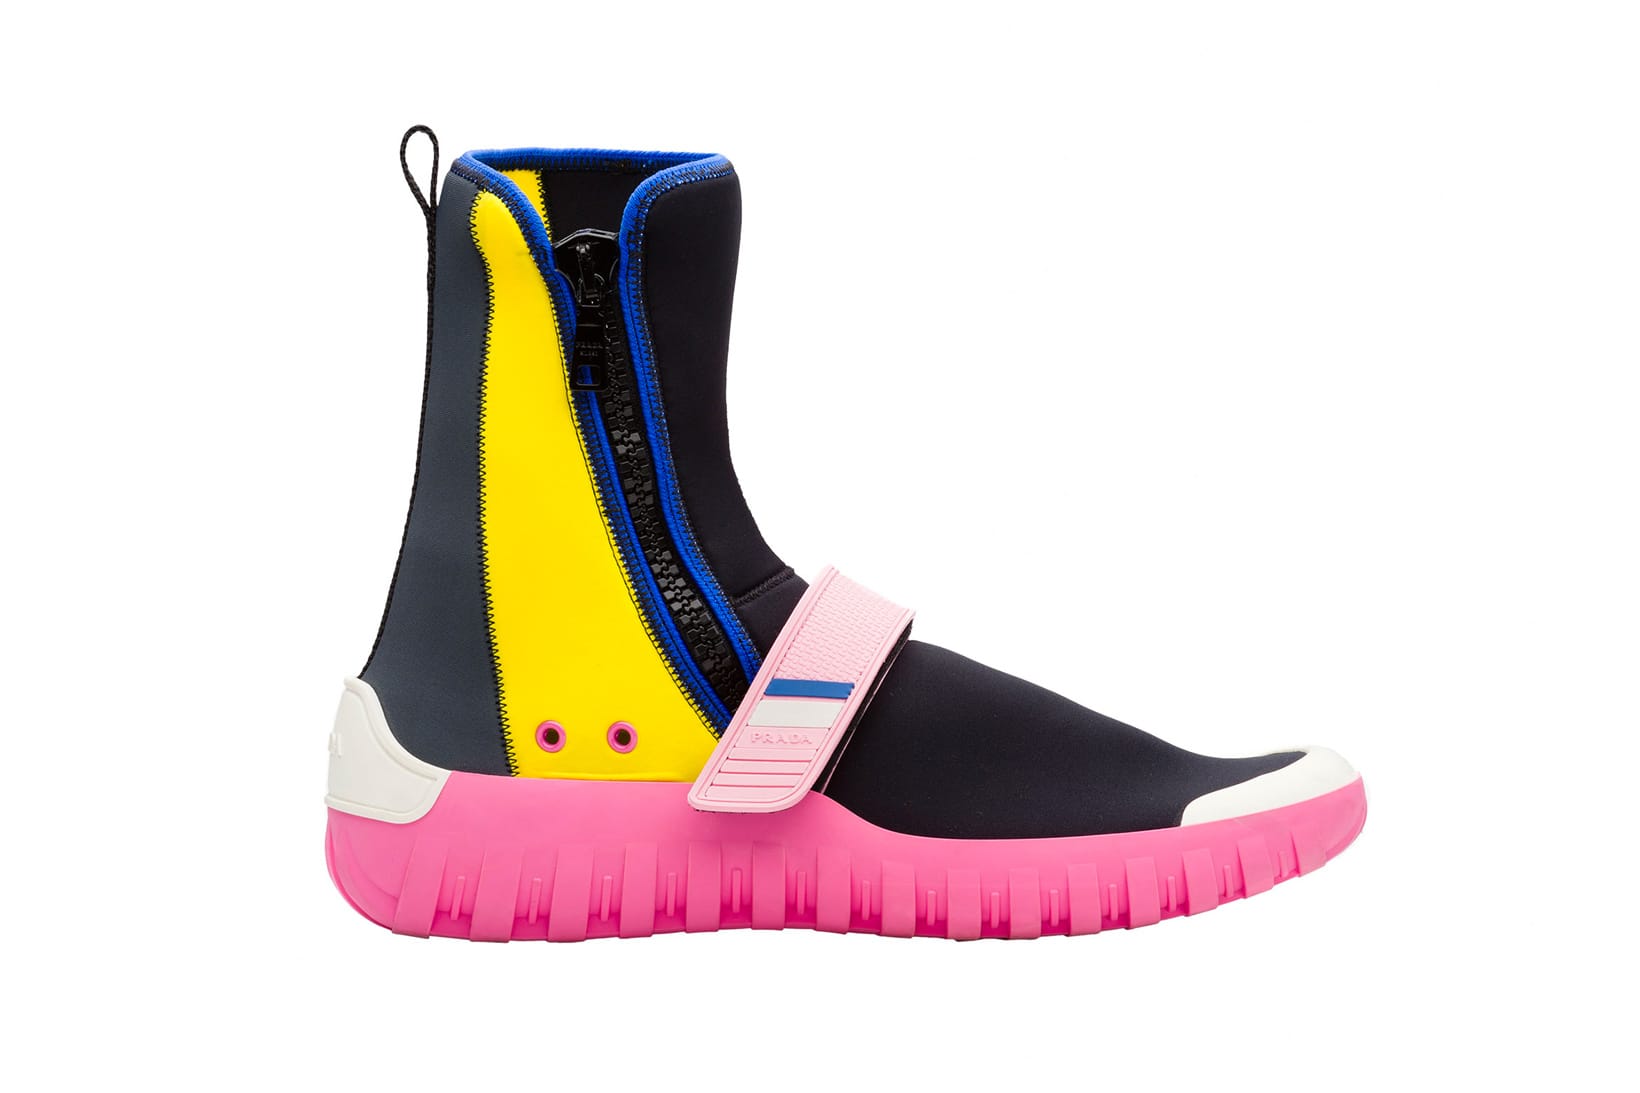 Prada's Scuba-Inspired Footwear Is 